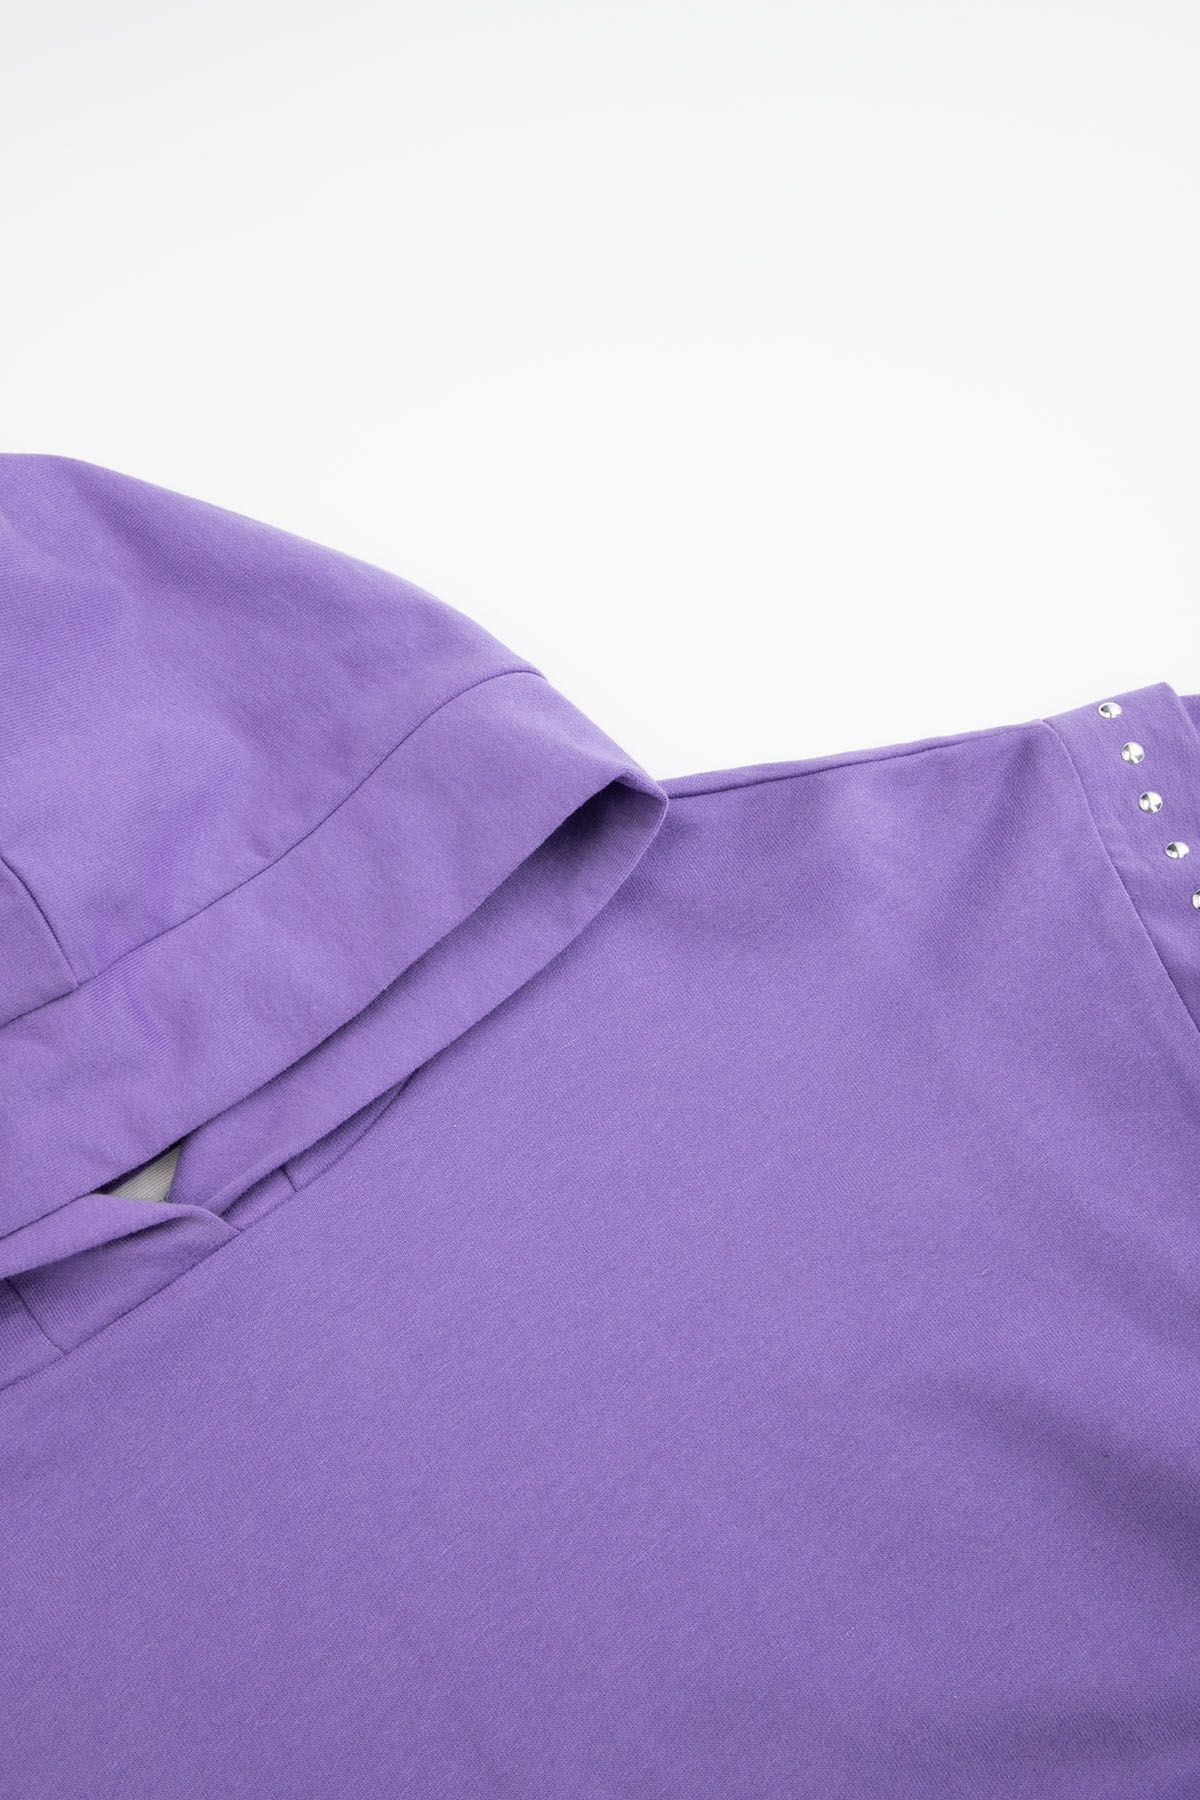 Bluza dresowa fioletowa z kapturem i ozdobnymi ćwiekami na ramionach 2220167